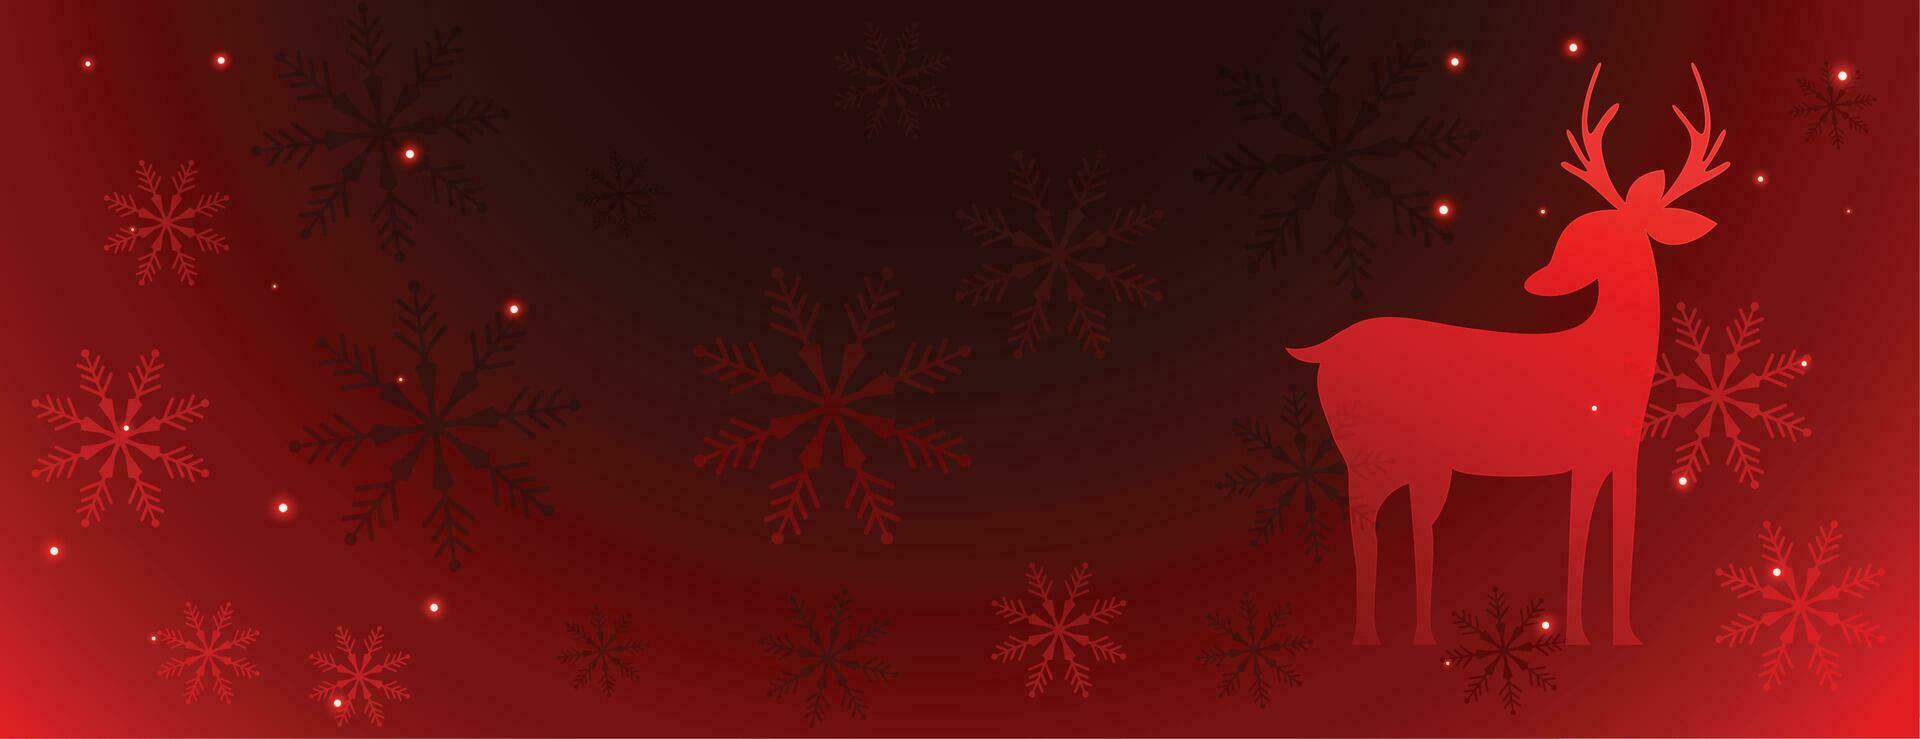 magique Noël rouge bannière avec cerf et flocons de neige vecteur